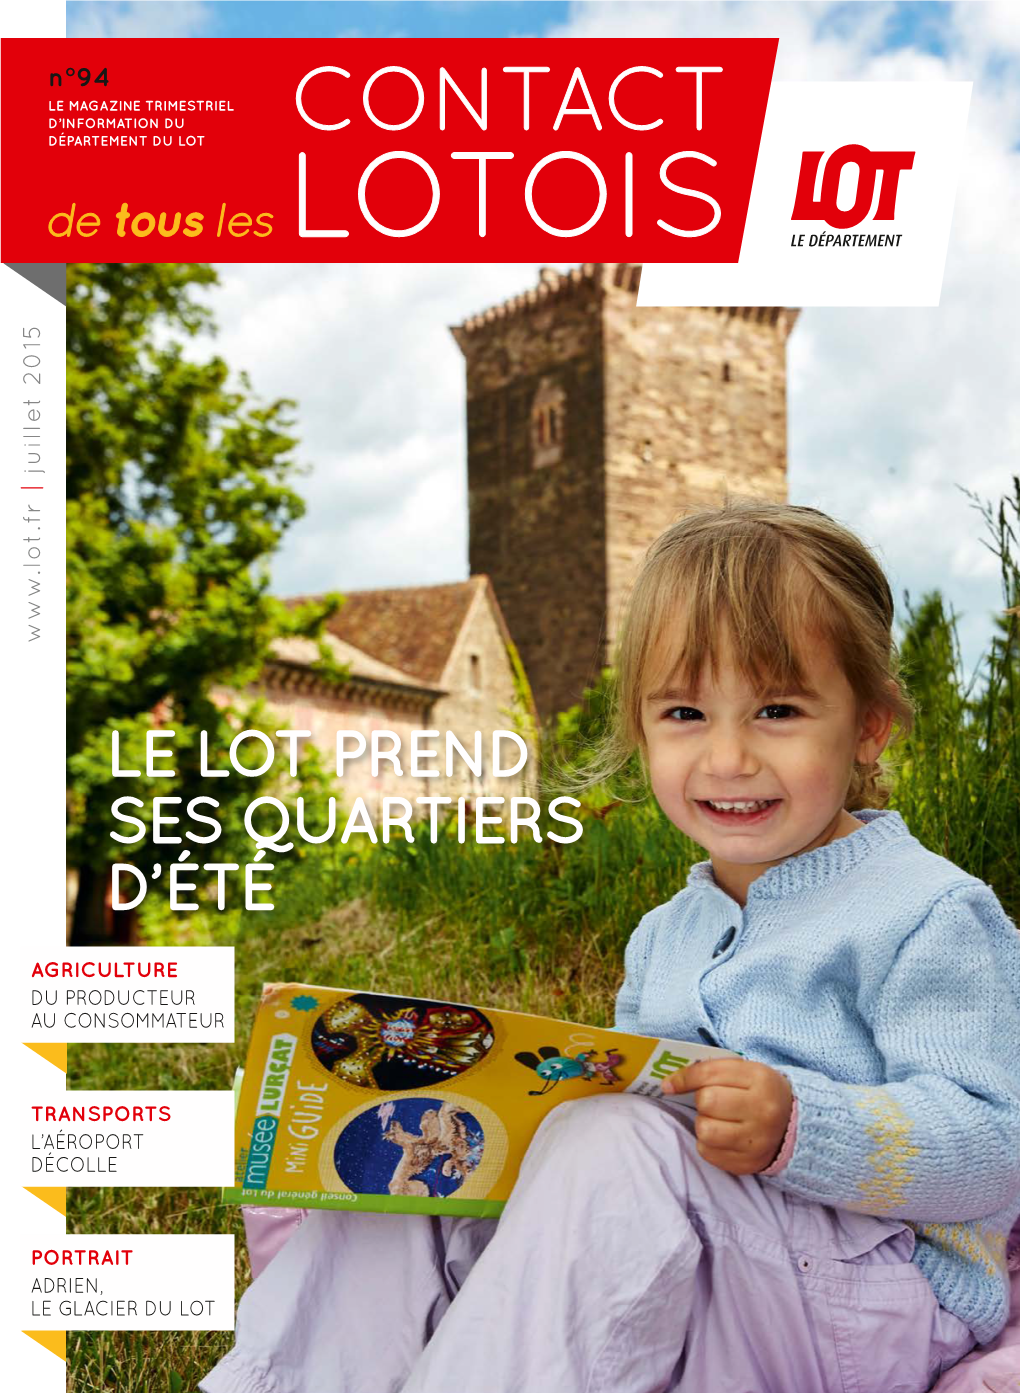 Contact Lotois, C’Est Flâner Au Cœur De Notre Magnifique Département